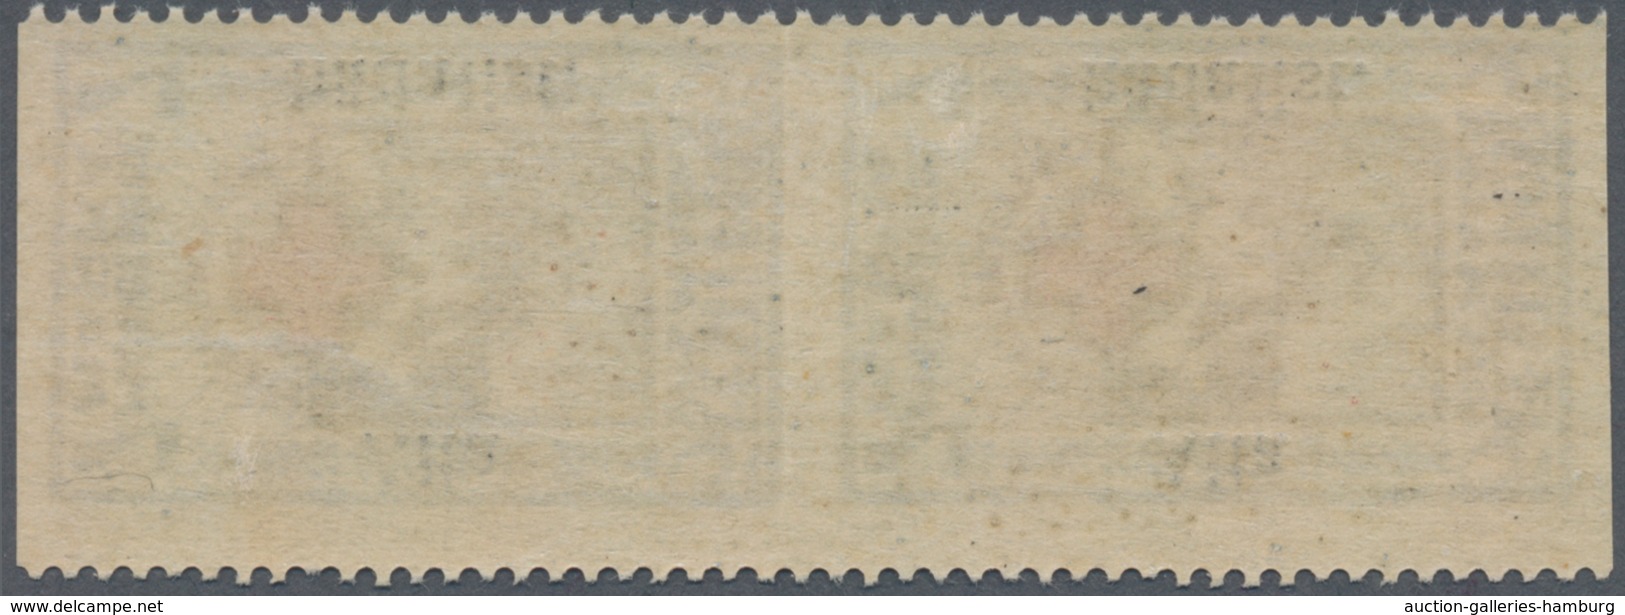 Estland: 1923, Aita Haedalist 5 St, In Vertical Pair "horizontal Imperforated", Unused With Fold Res - Estonia